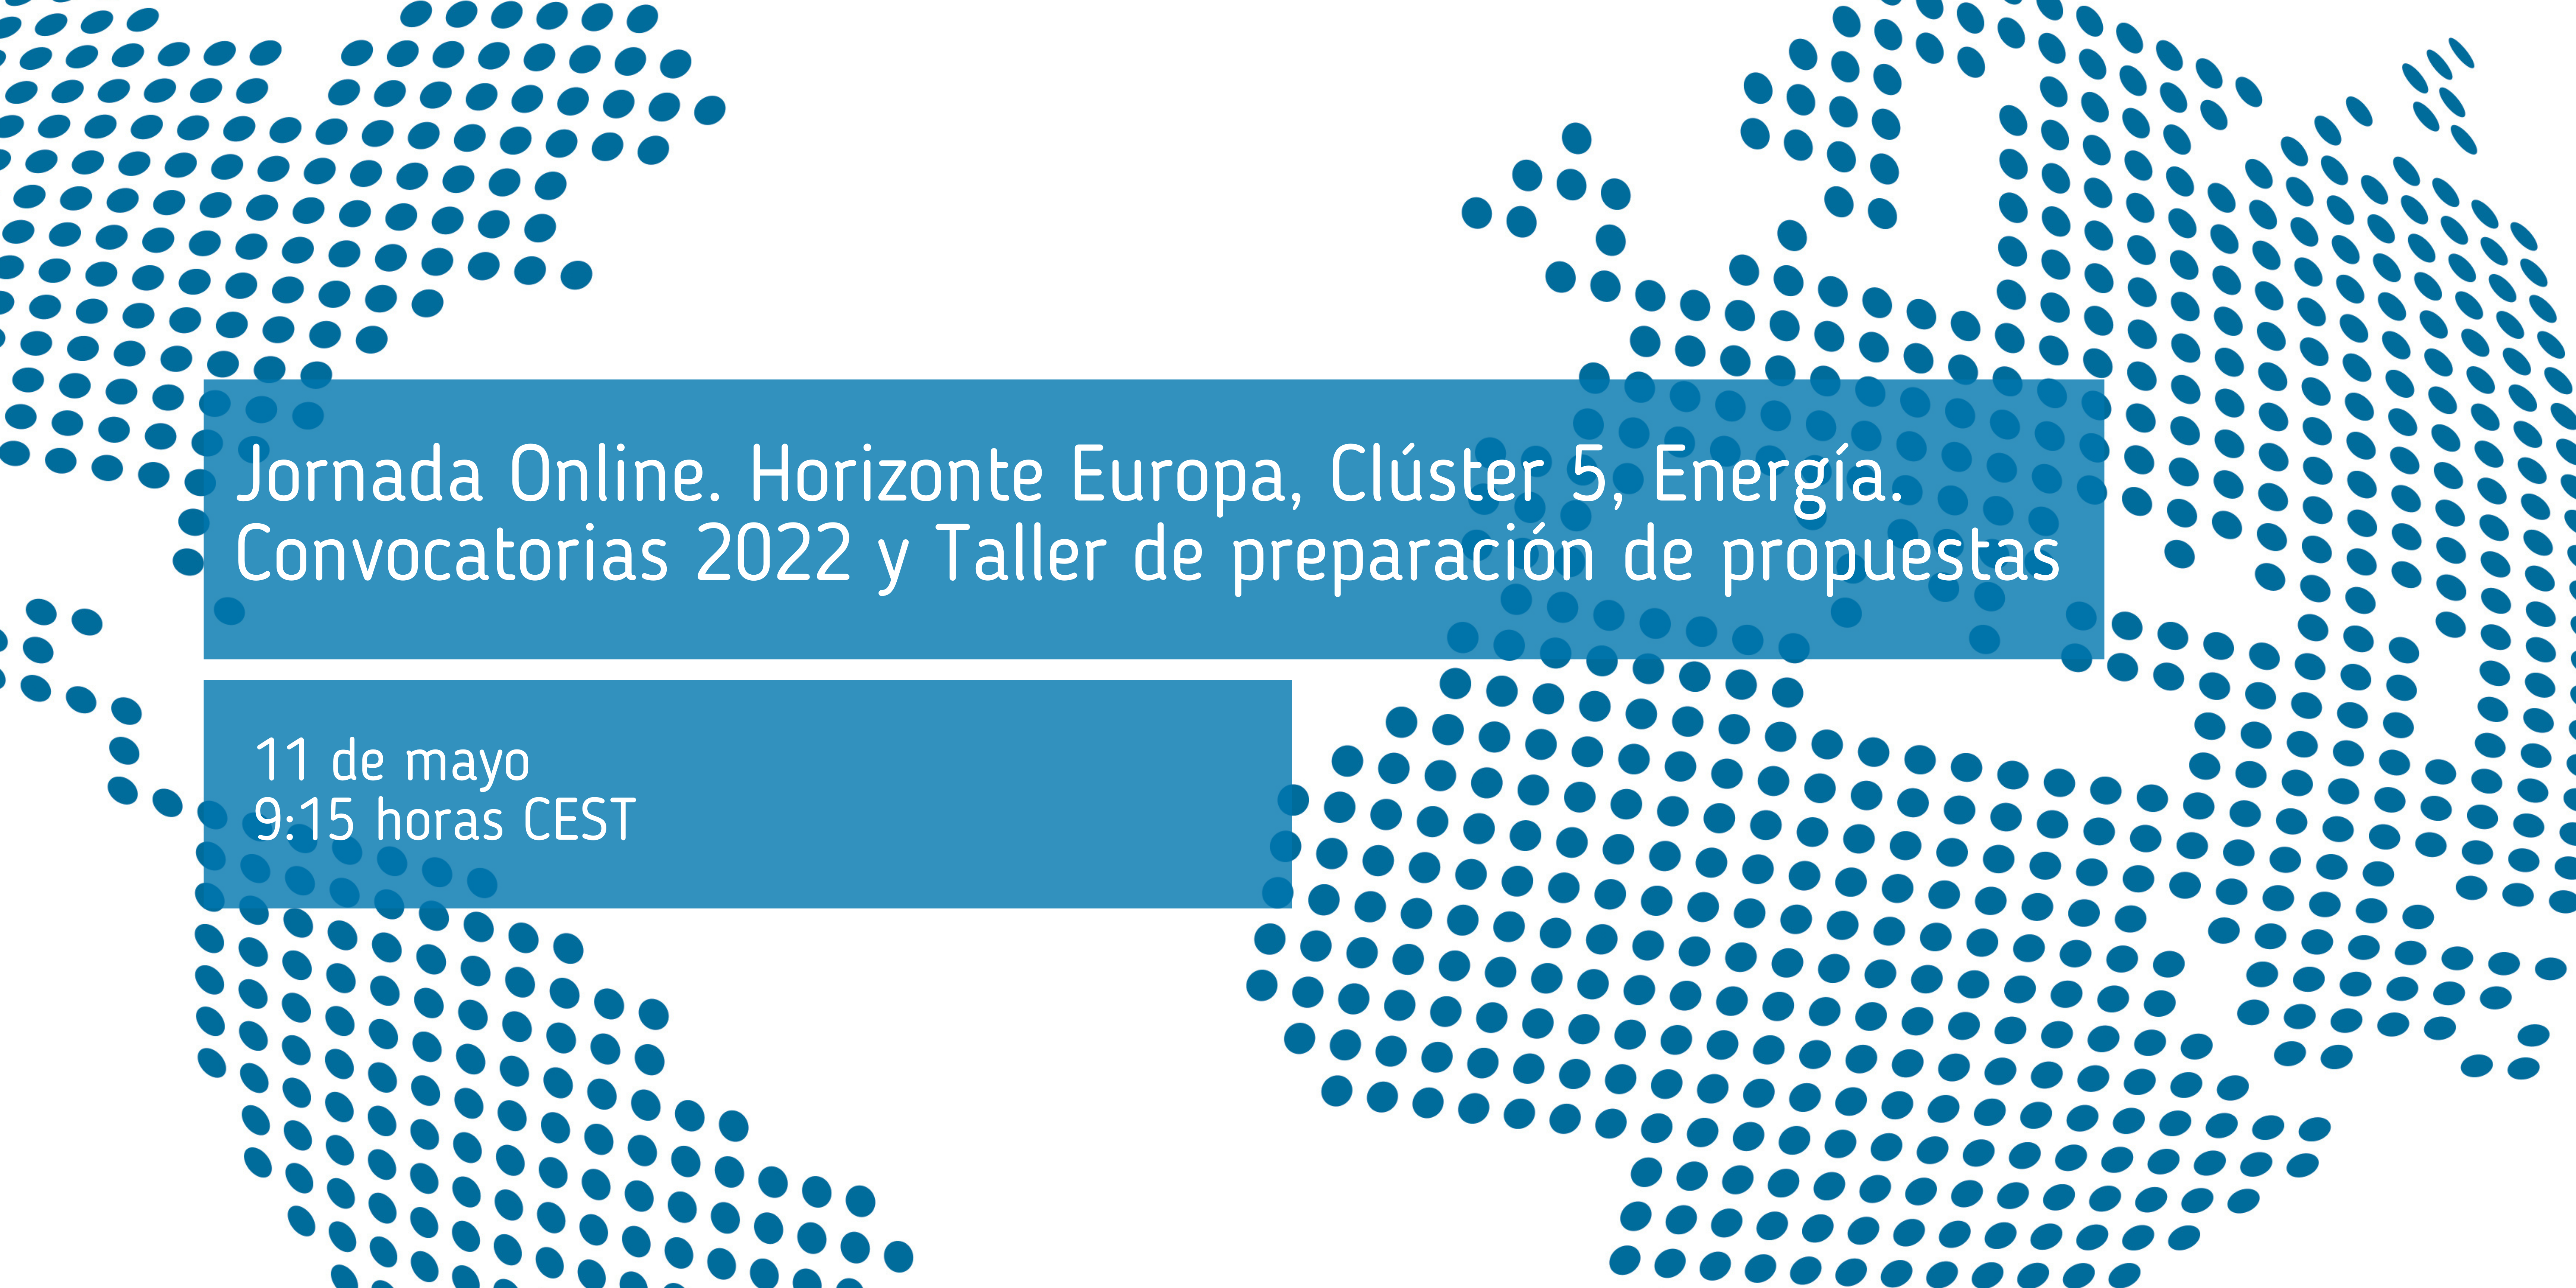 Jornada_online_Horizonte_Europa_Clúster_5_Energía_Convocatorias_2022_y_Taller_de_preparación_de_propuestas